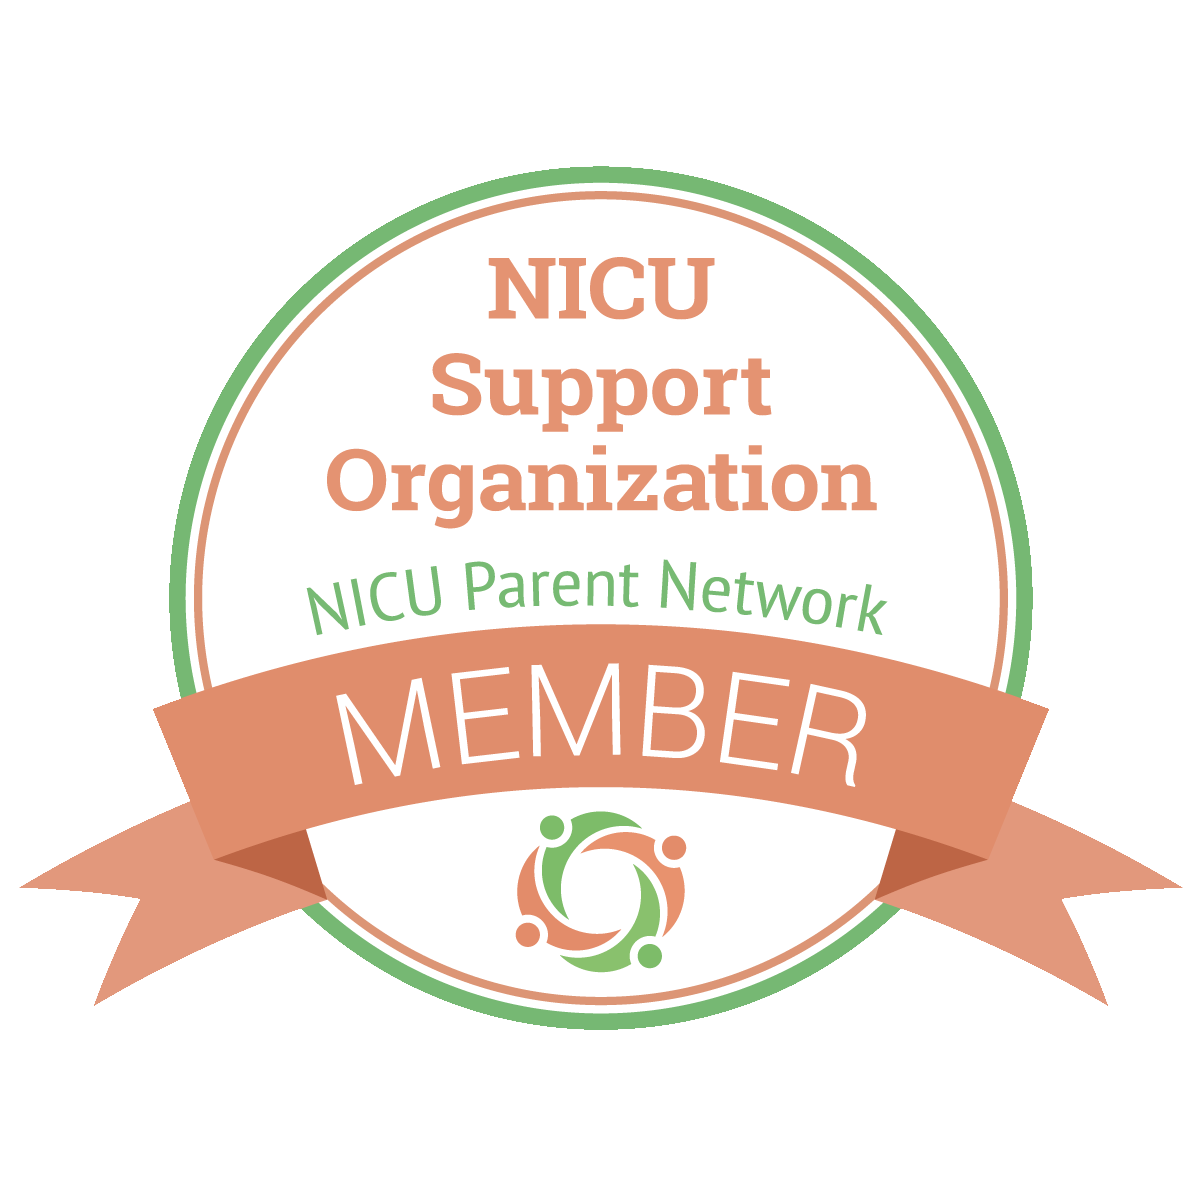 NICU Support Organization NICU Parent Network Member